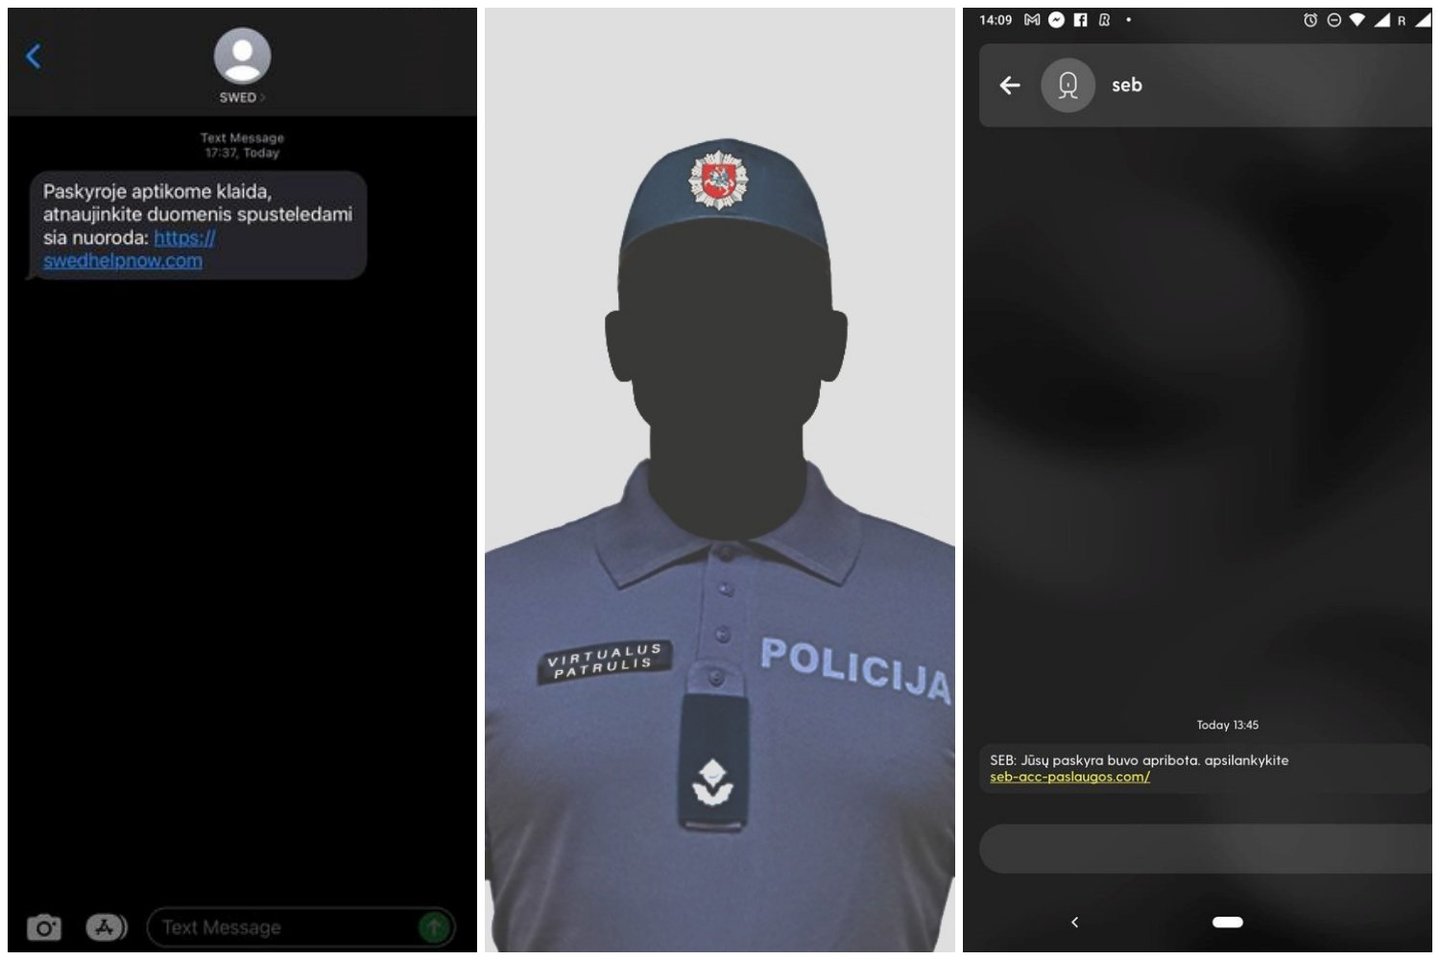  Į Policijos virtualaus patrulio puslapį gaunami pranešimai apie tai, kad šiuo metu sukčiai siuntinėja SMS žinutes prisidengdami Lietuvos bankais.<br> Facebook/Virtualus patrulis nuotr.